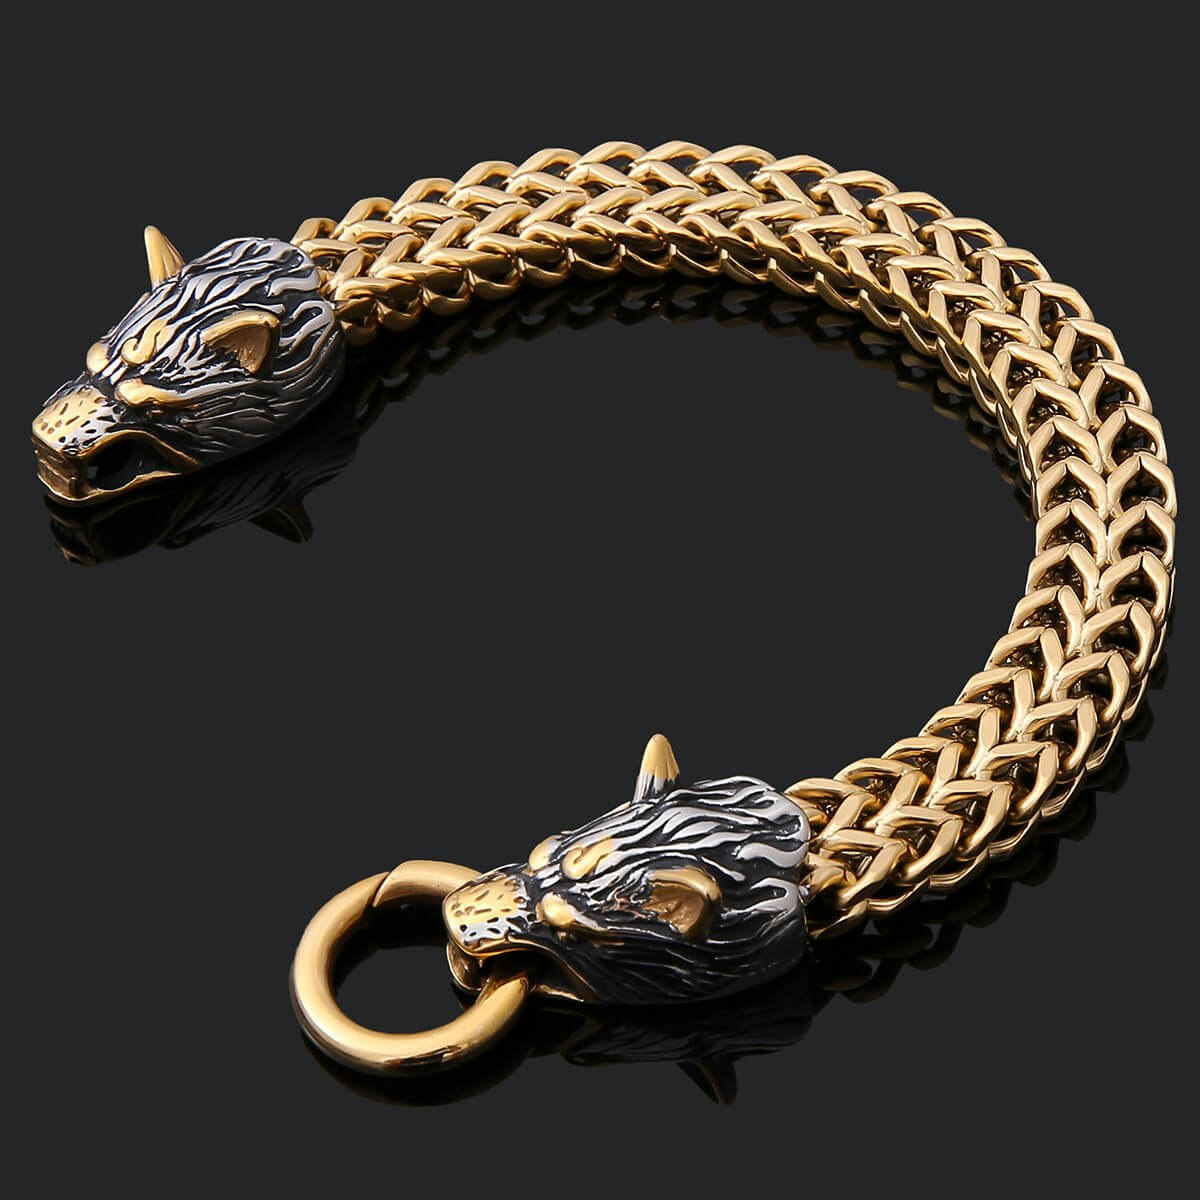 Bracelet Golden Armor Wolves